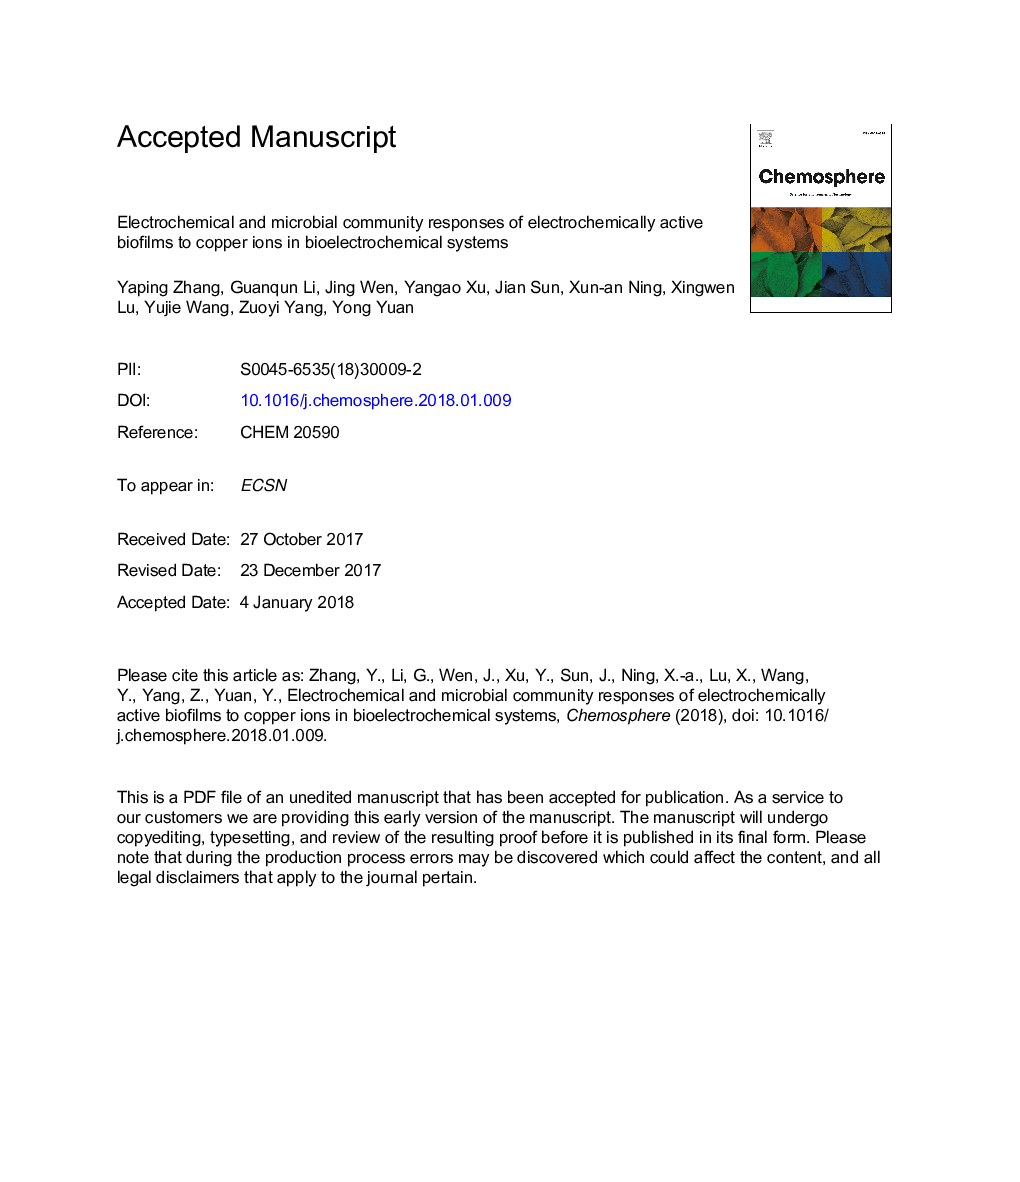 واکنش های الکتروشیمیایی و میکروبی جامعه بیوفیلم های فعال الکتروشیمیایی به یون های مس در سیستم های بیو الکتروشیمیایی 